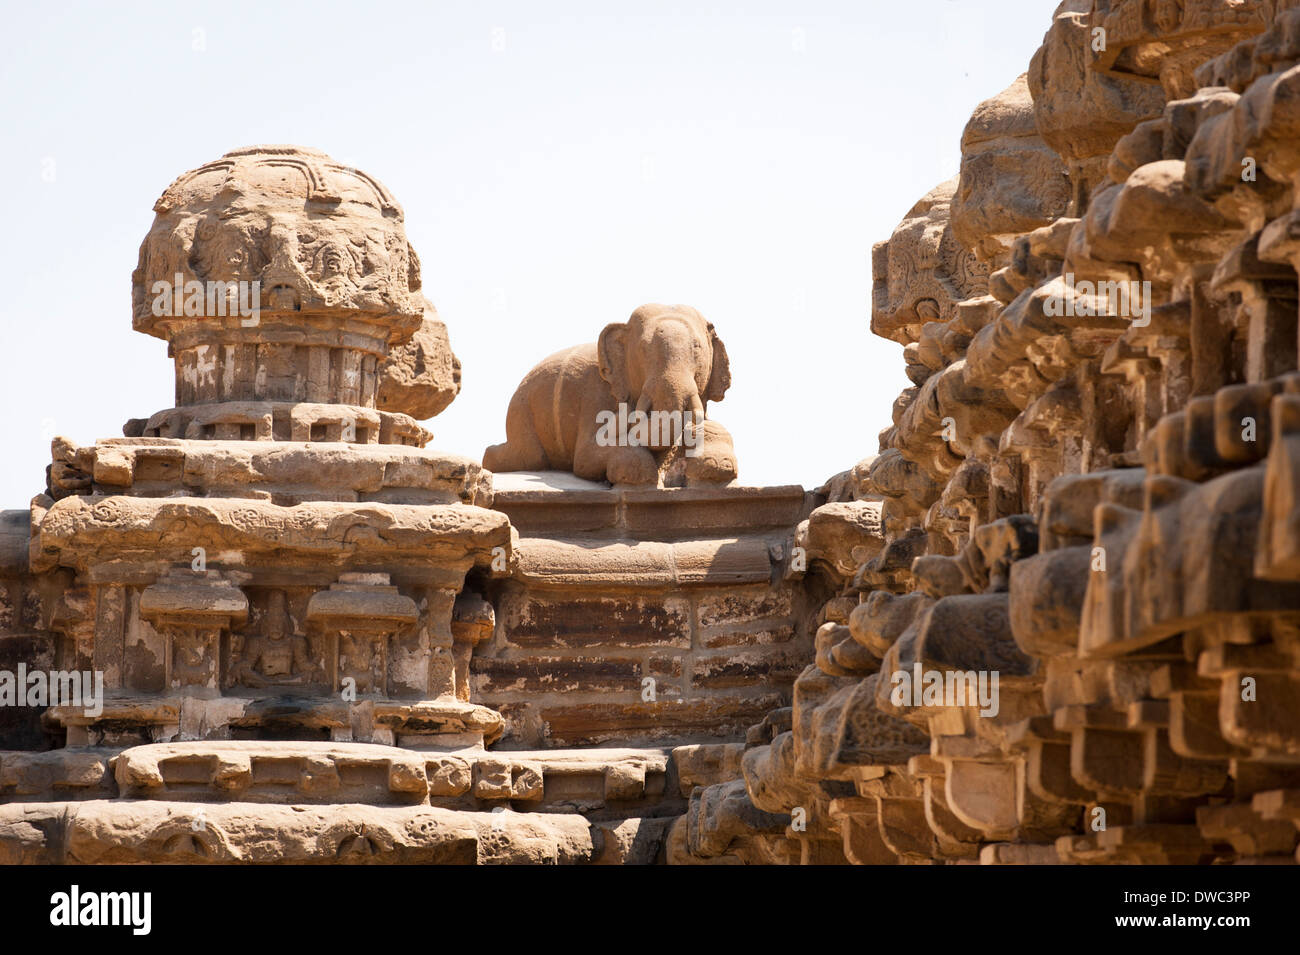 Le sud de l'Inde Tamil Nadu 6e siècle Kanchipuram Sri Kanchi Kailasanthar Hindu Temple de Shiva shikara tour bas-relief figures sculptées elephant etc Banque D'Images